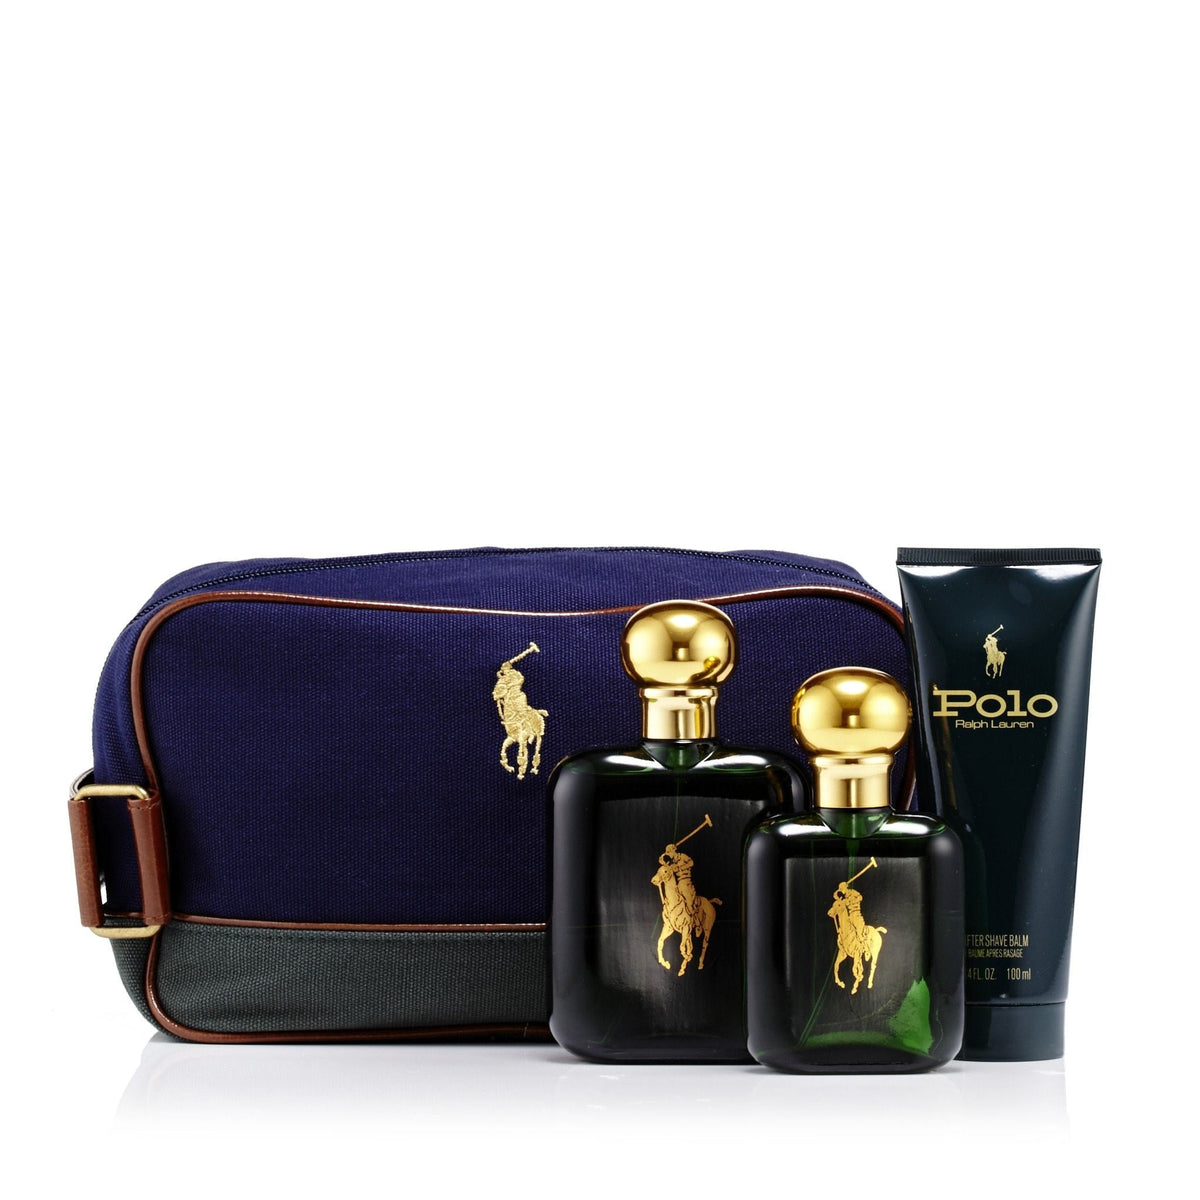 Polo Green Gift Set and Dopp Kit Bag for Men by Ralph Lauren